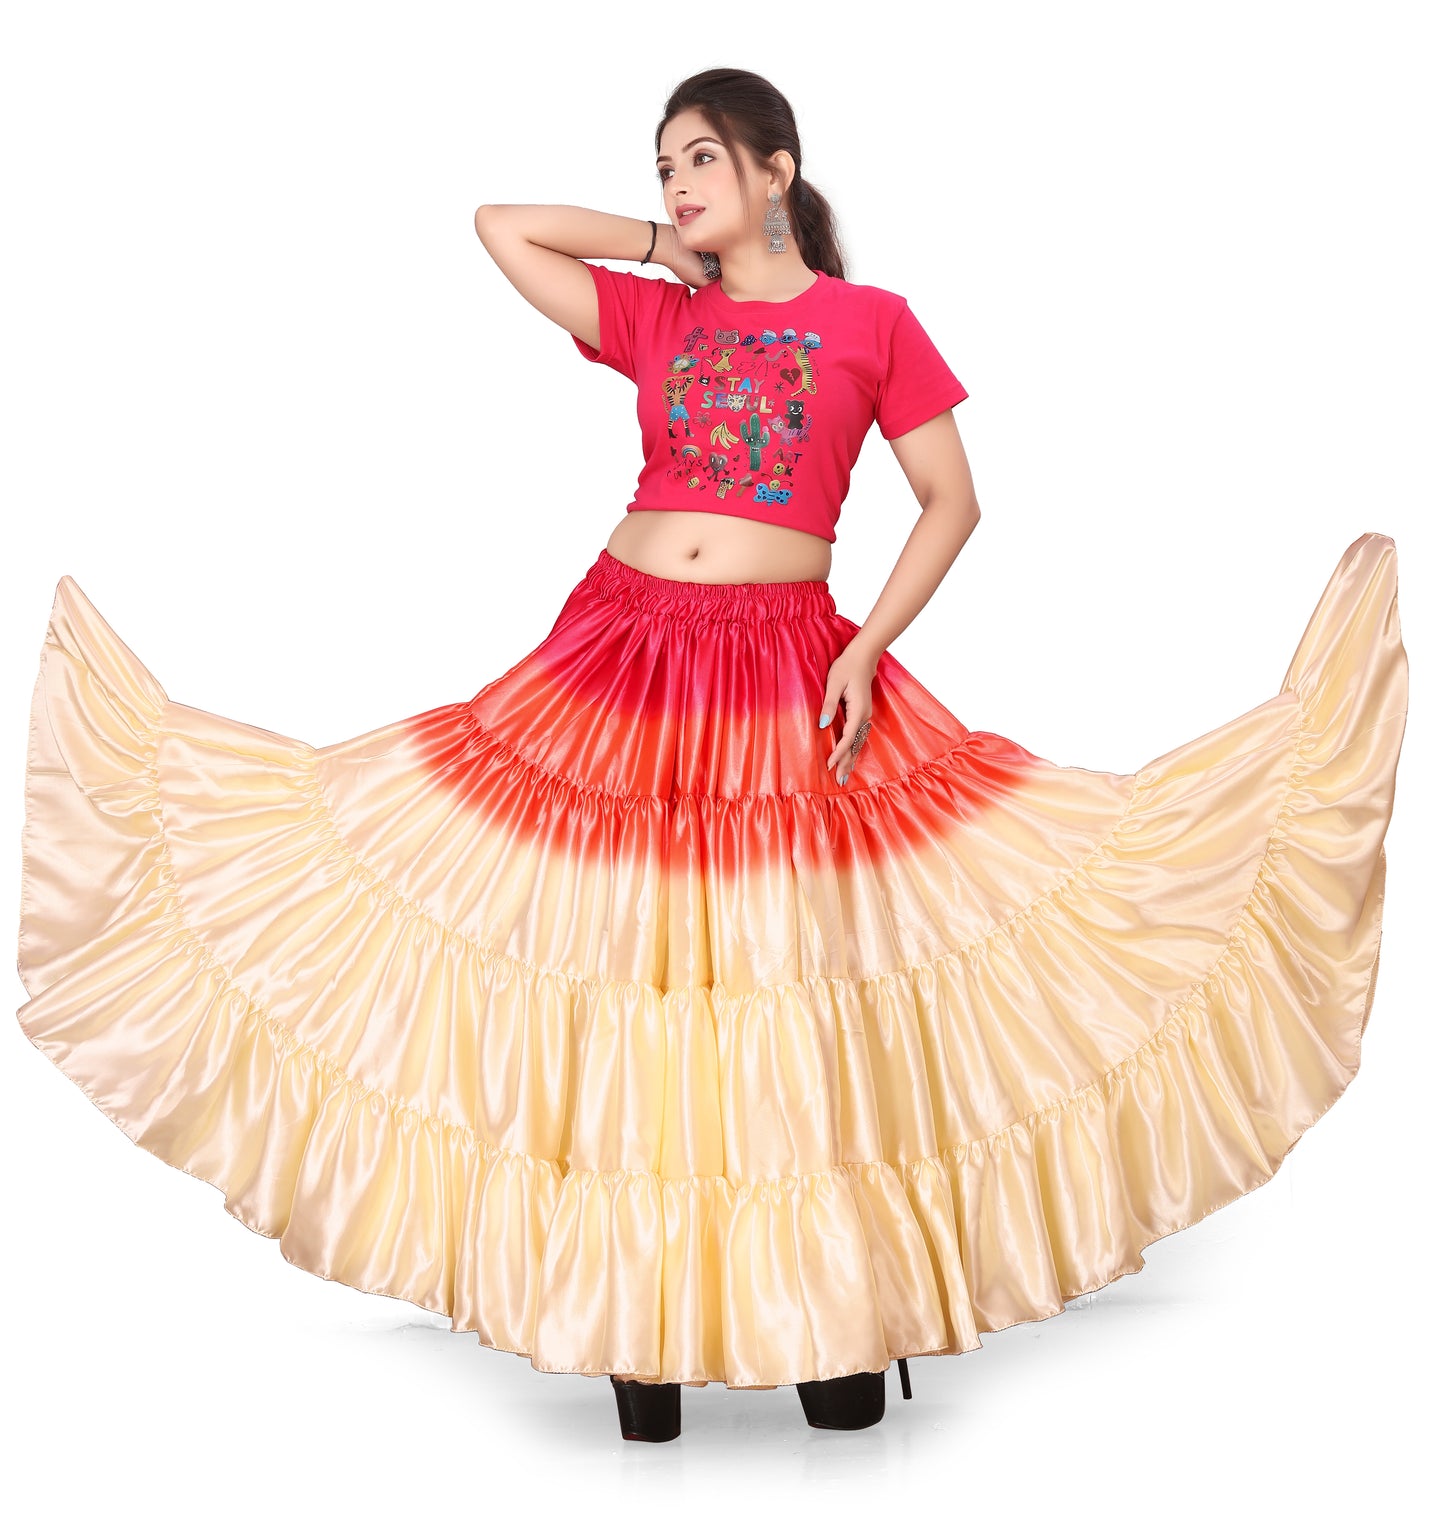 Satin 25 Yard 4 Tier Skirt Multi Color Skirt Belly Dance Skirt KF13-2